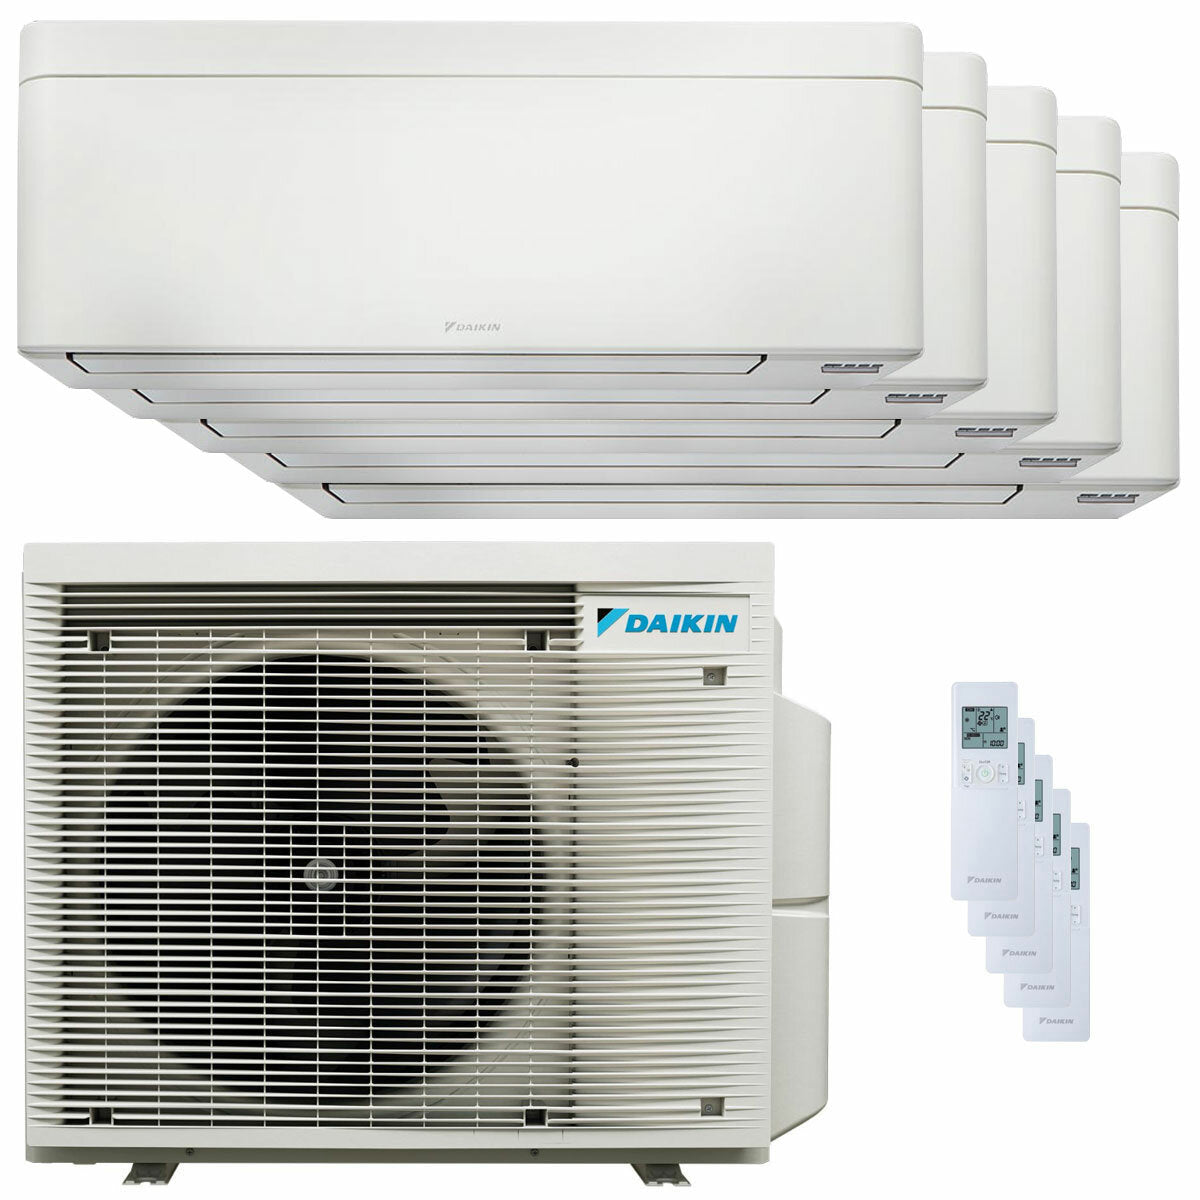 Daikin Stylish White Penta-Split-Klimaanlage 7000+9000+9000+9000+18000 BTU Inverter A++ WLAN-Außeneinheit 7,8 kW